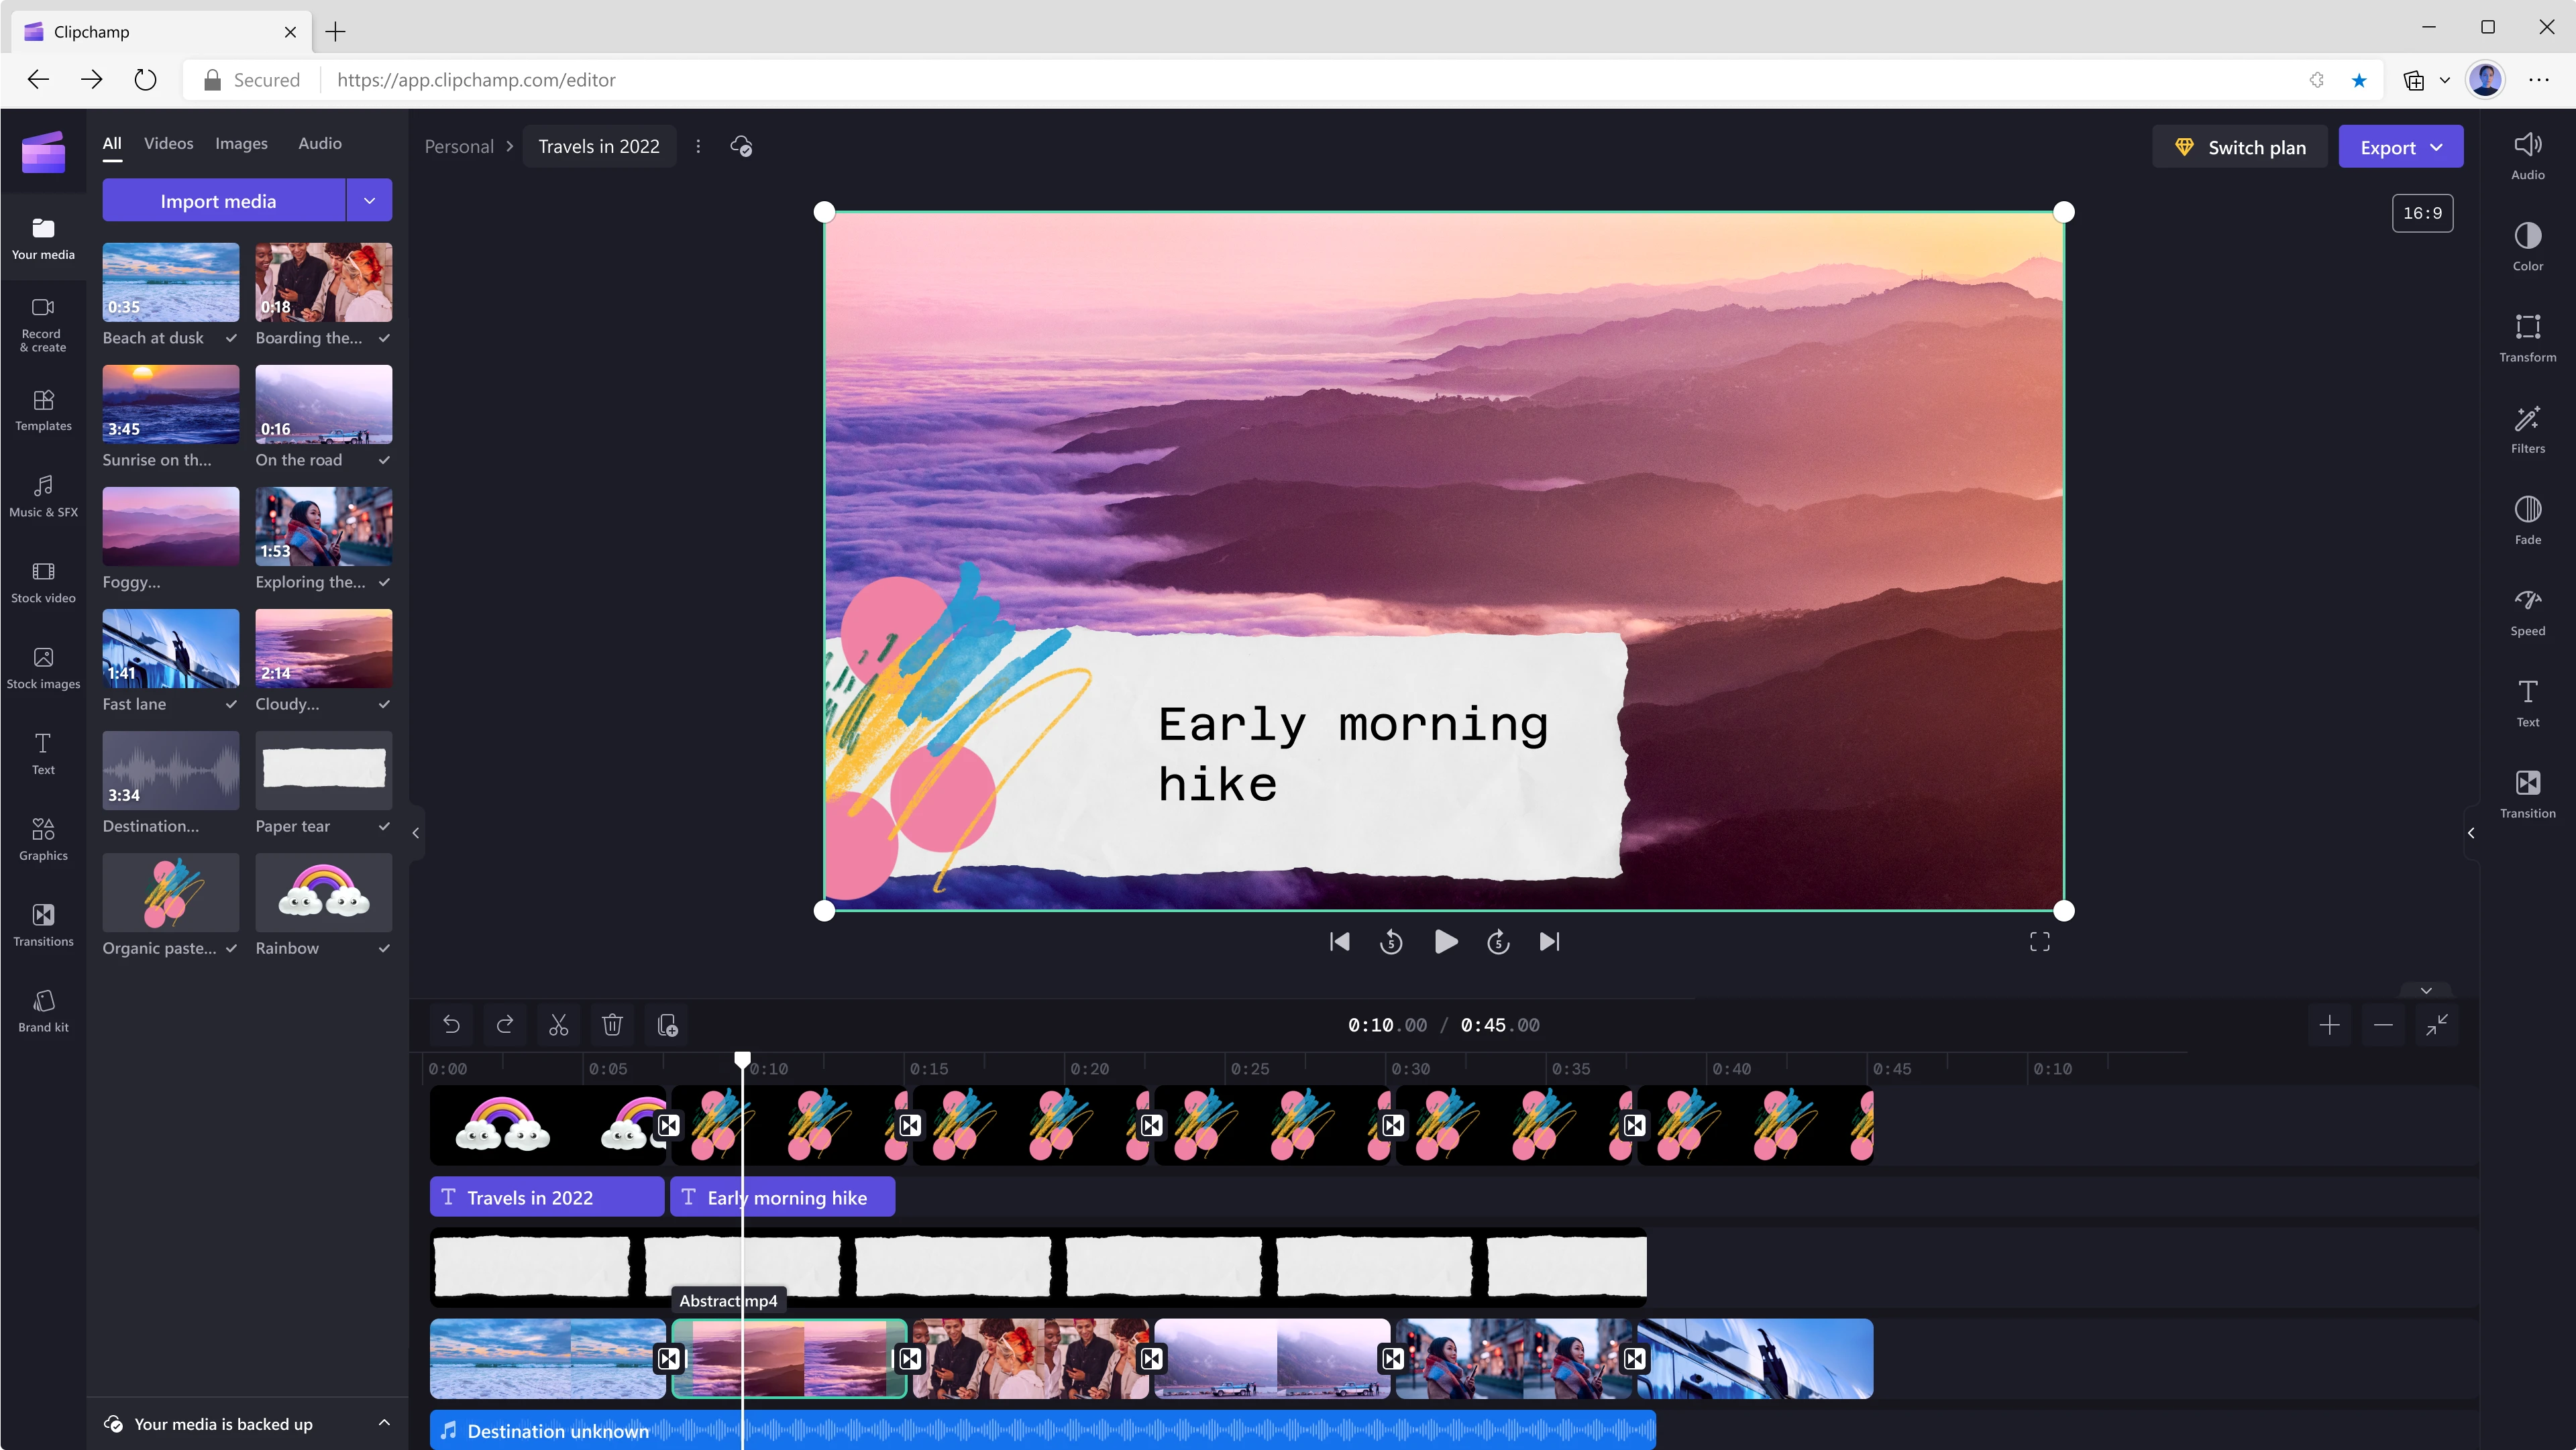 صورة لمستخدم يقوم بتحرير مقطع فيديو مدته 45 ثانية باستخدام تطبيق Clipchamp. صورة تعرض عند الثانية 10 من الفيديو جبال وغيوم ذات اللون البنفسجي، مع كتابة عبارة نزهة صباحية فوق إطار الفيديو.